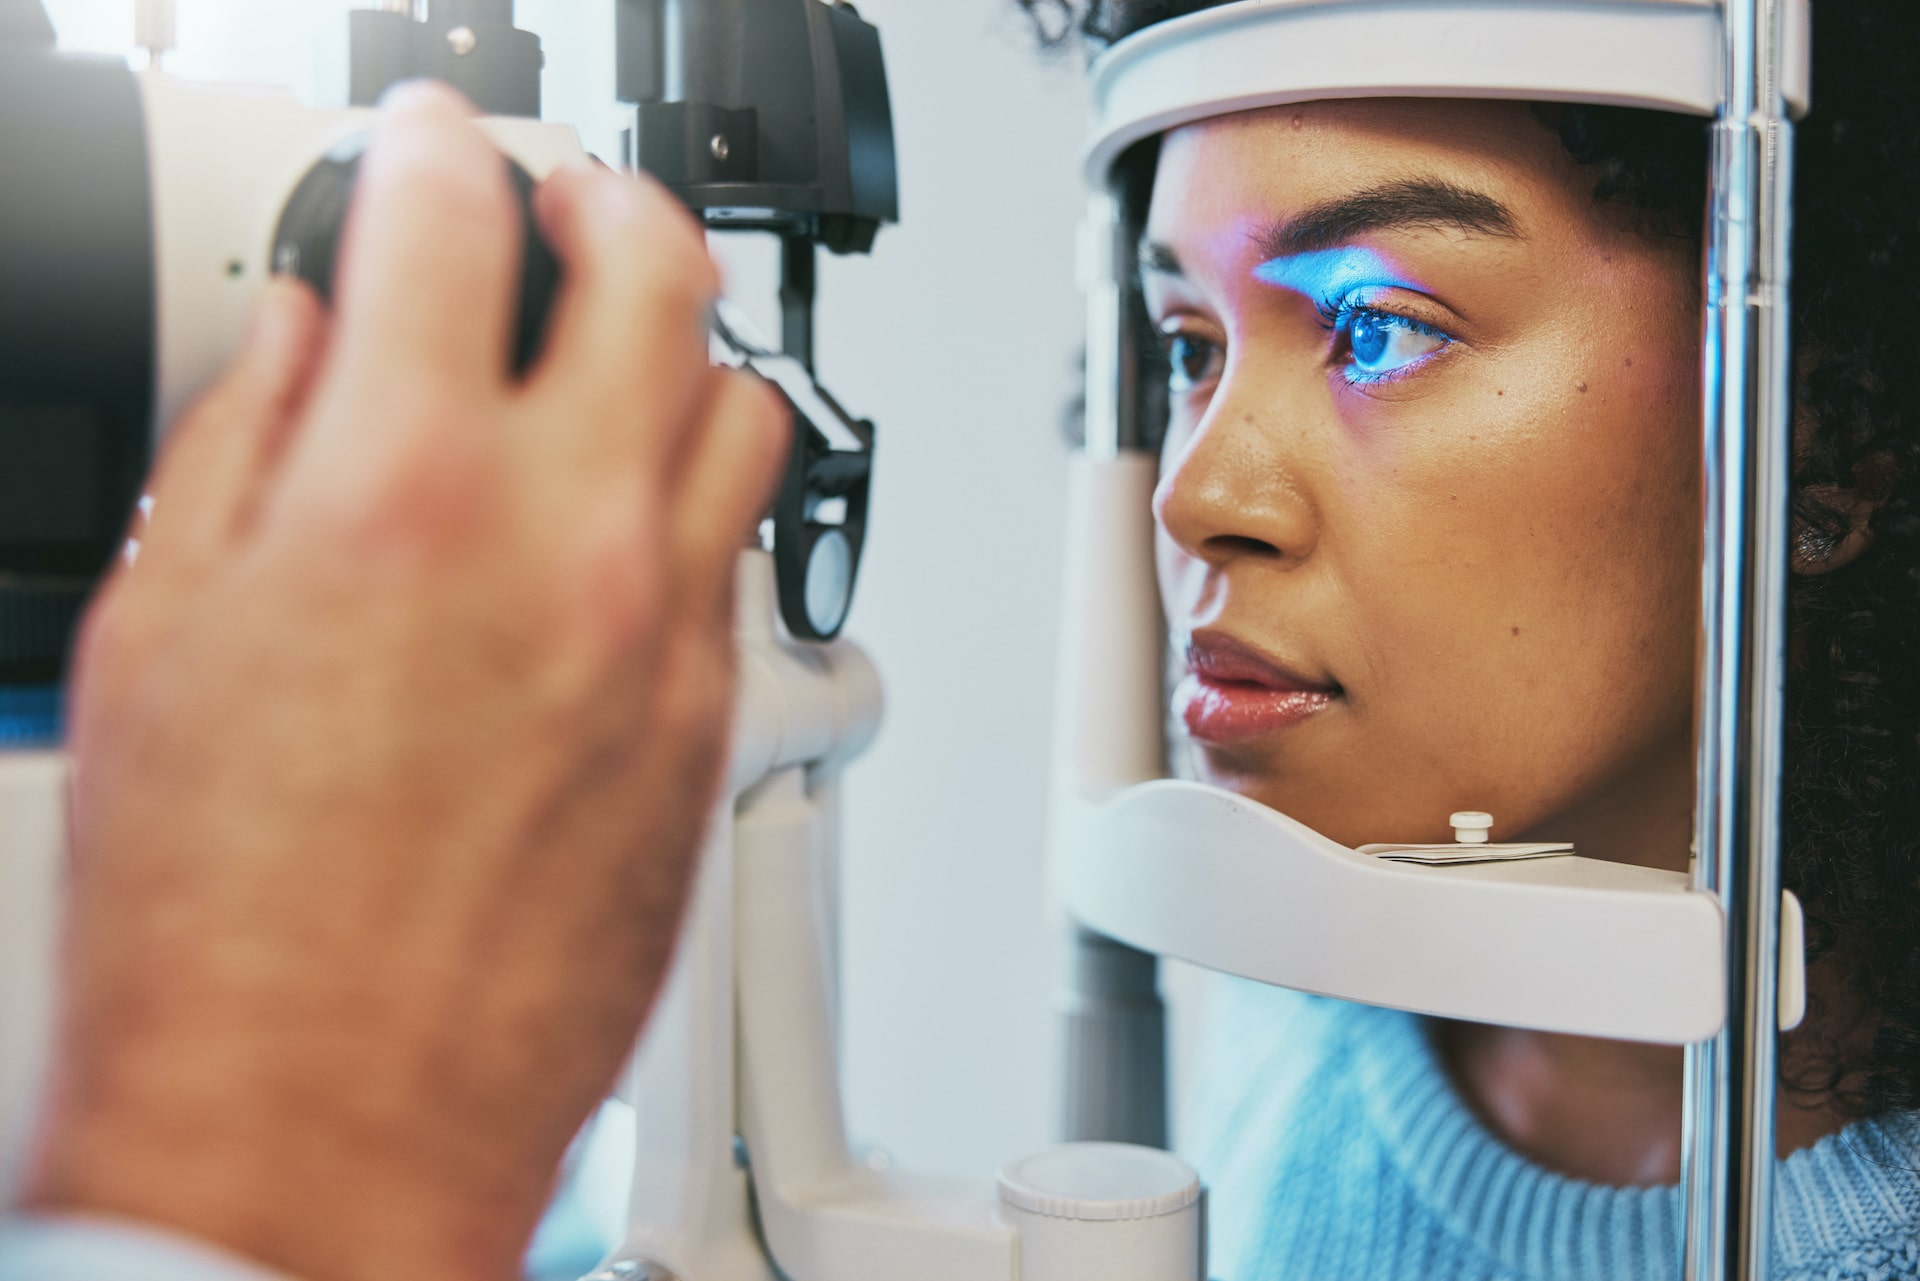 Laser Eye Treatment or Laser Vision Correction